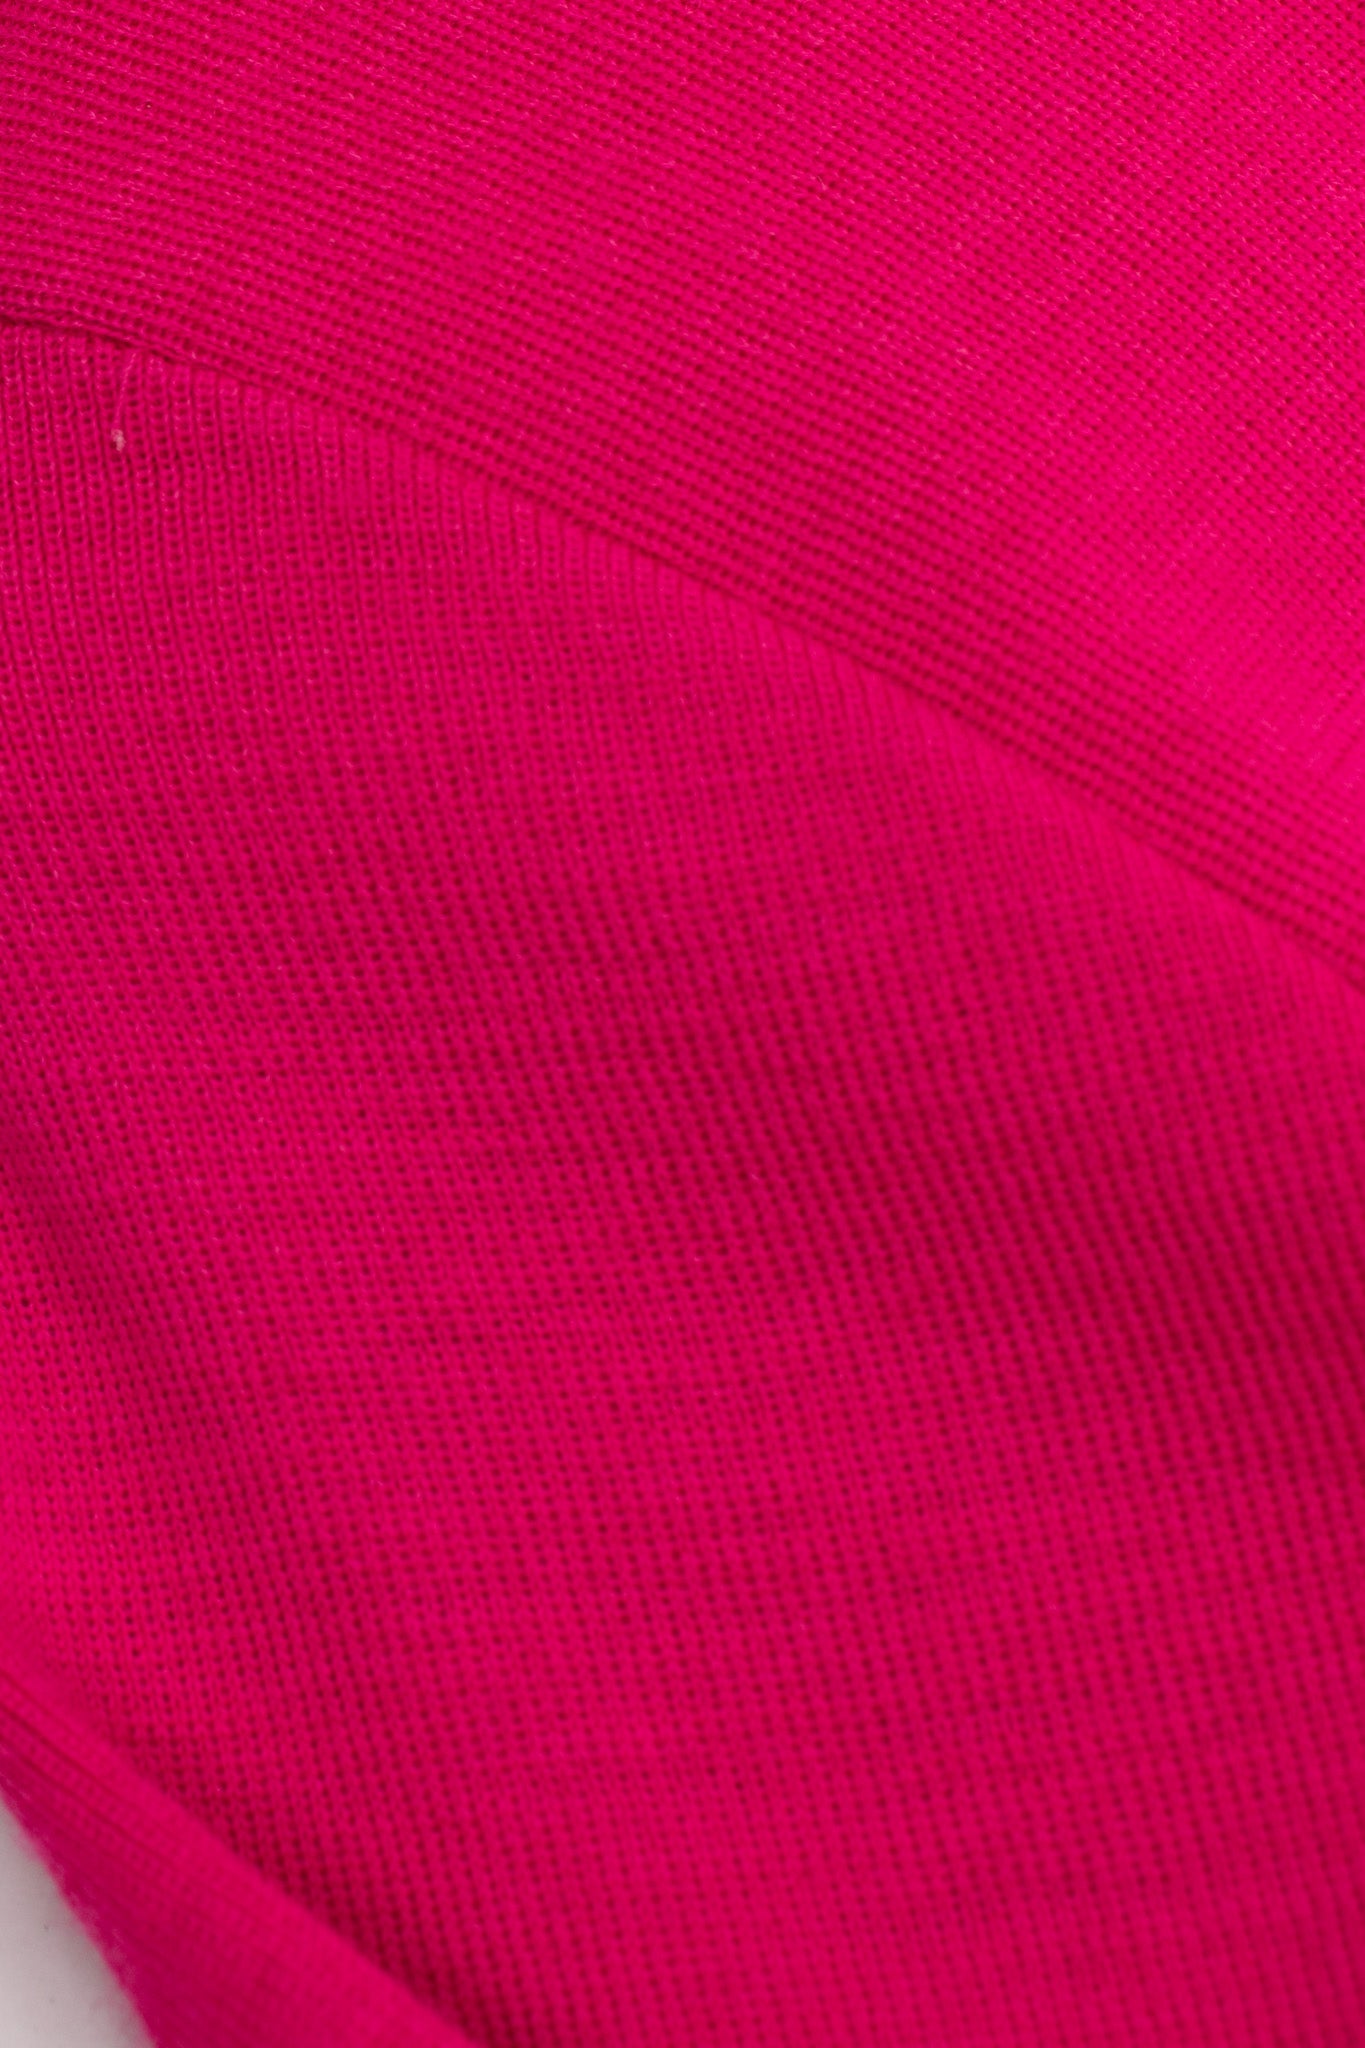 Recess Los Angeles Vintage Andrea Jovine Hot Pink Beaded Fringe Yokea Bodycon Dress